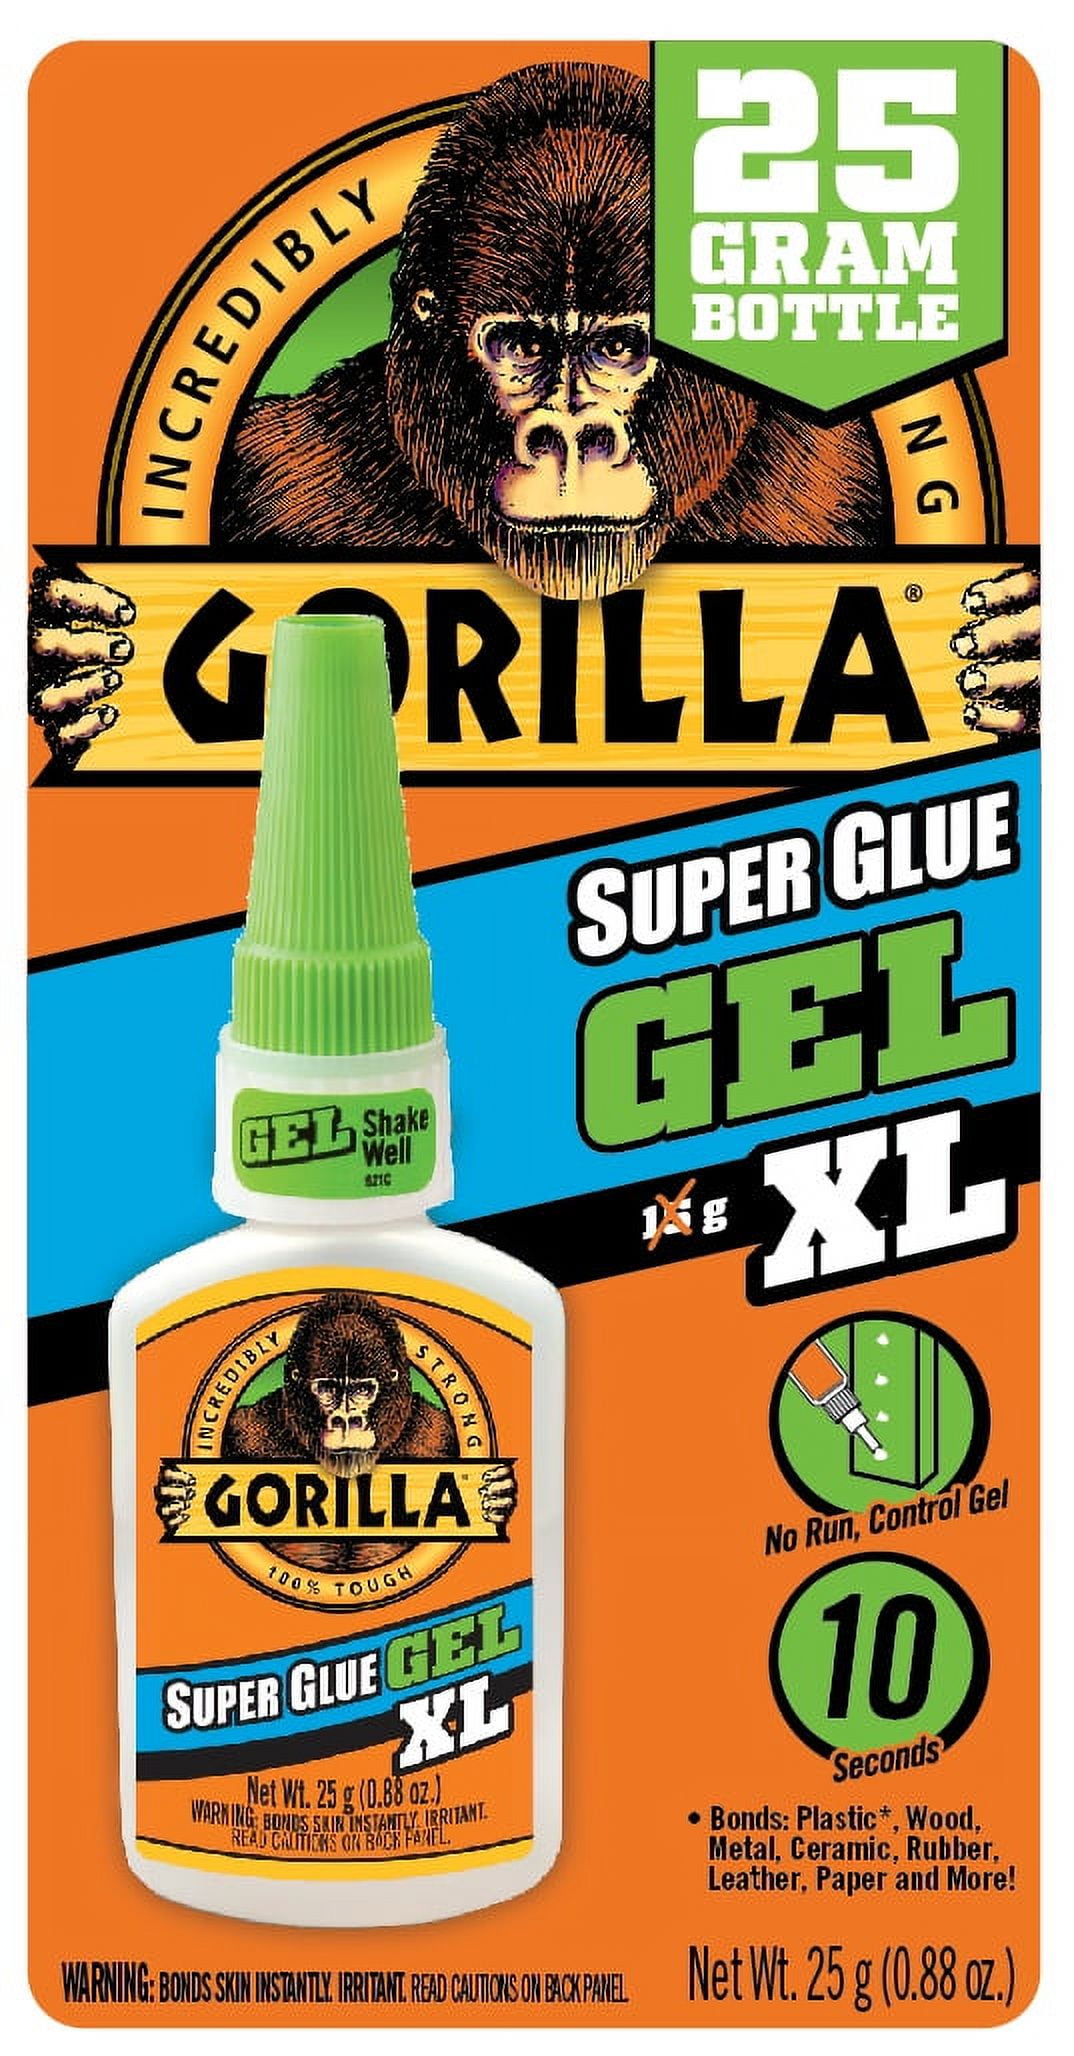 How to Remove Super Glue — How to Remove Gorilla Glue